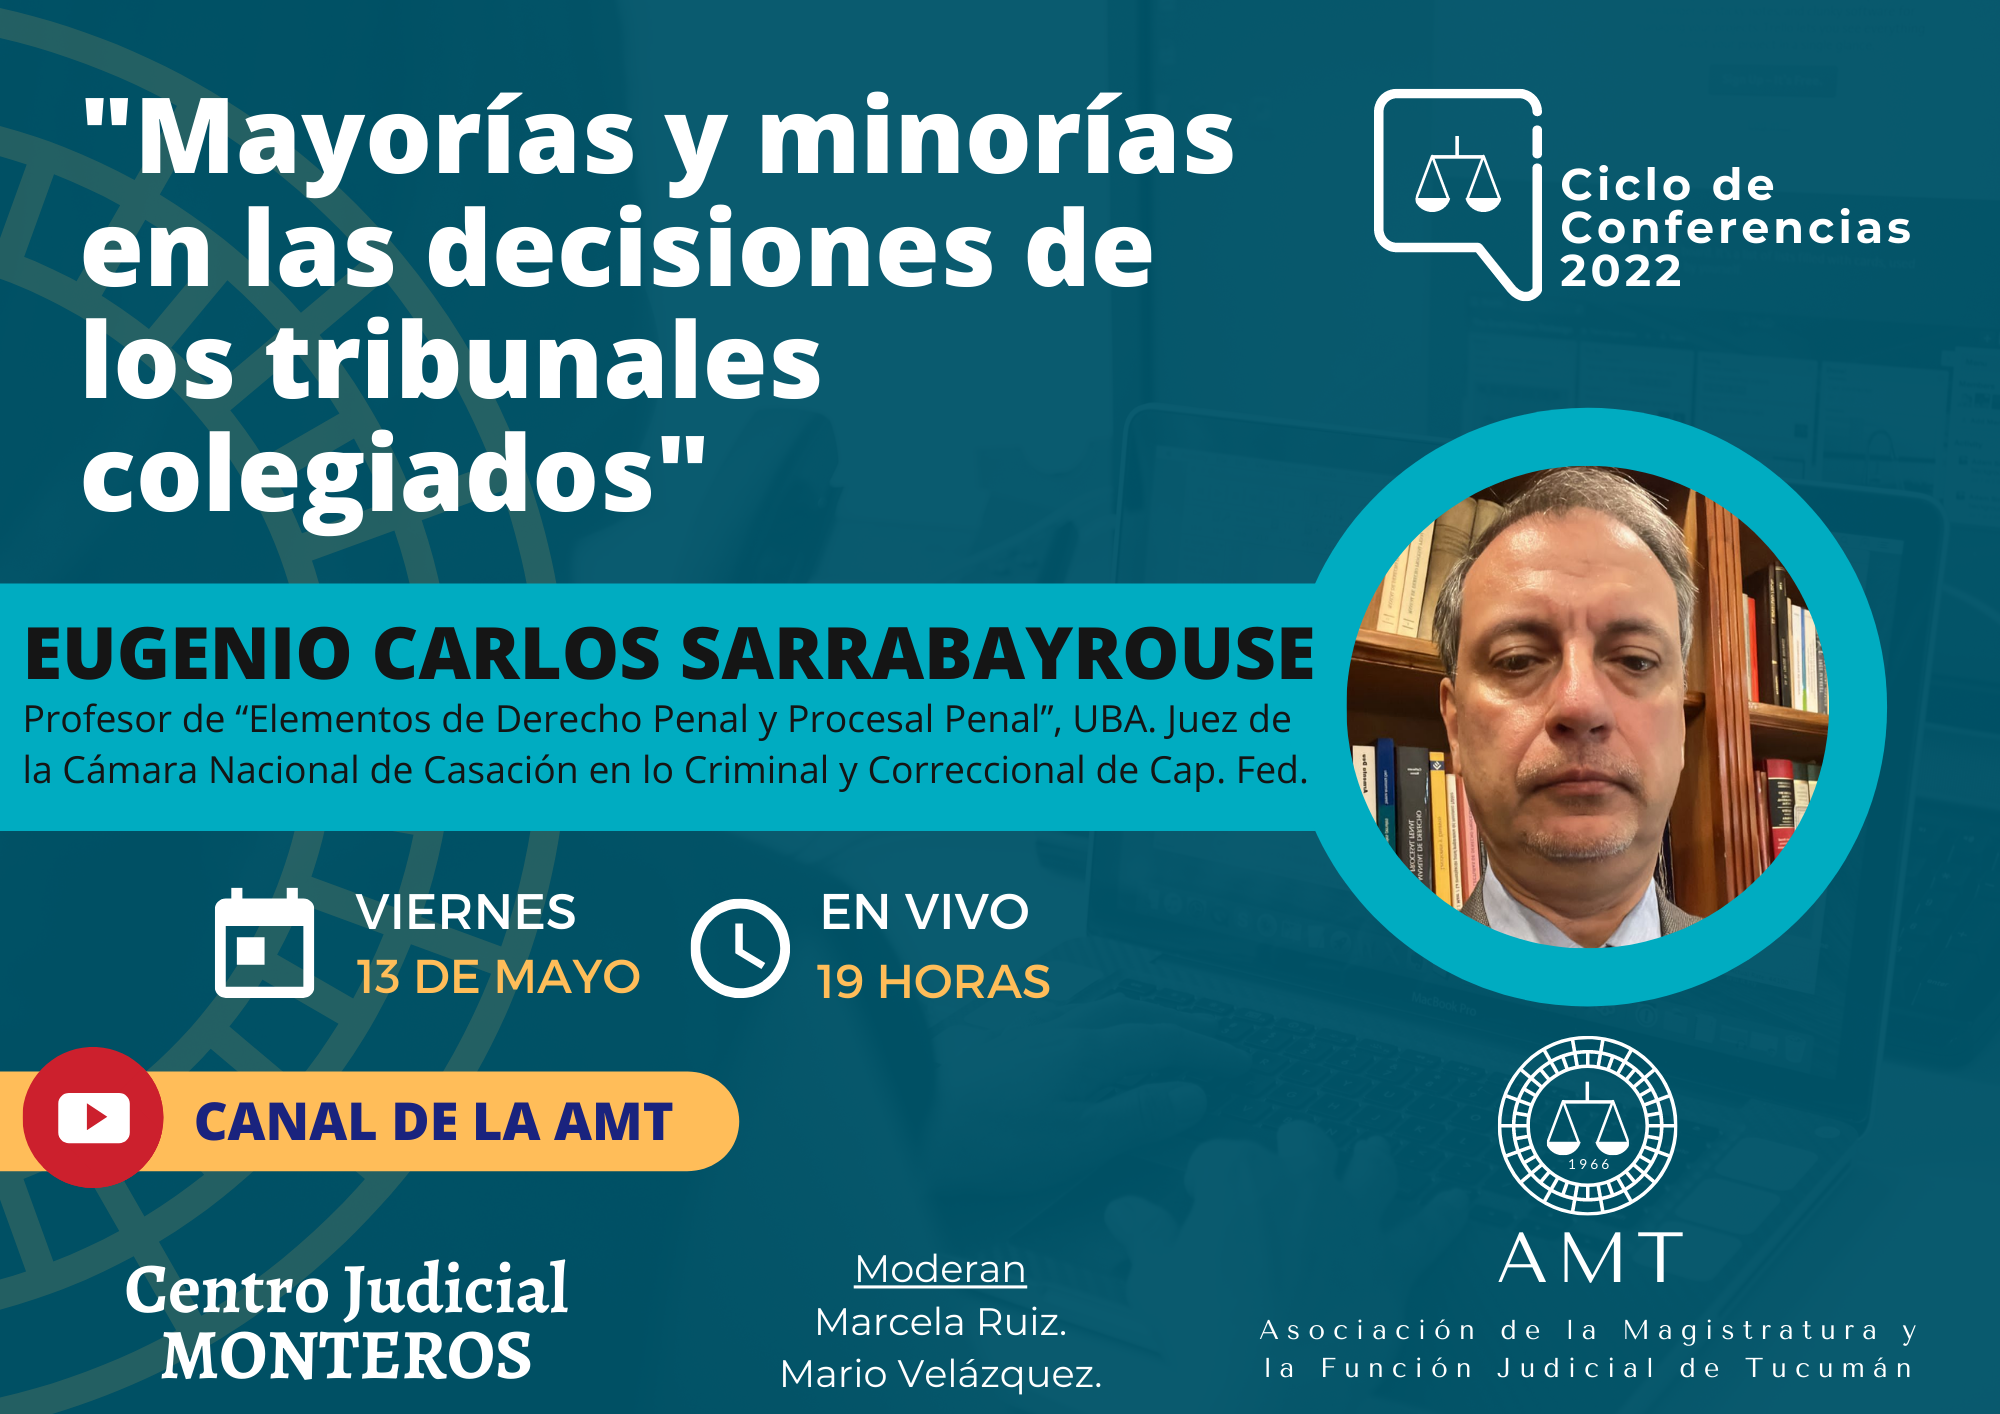 Vuelva a ver la conferencia de Eugenio Carlos Sarrabayrouse «Mayorías y minorías en las decisiones de los tribunales colegiados»